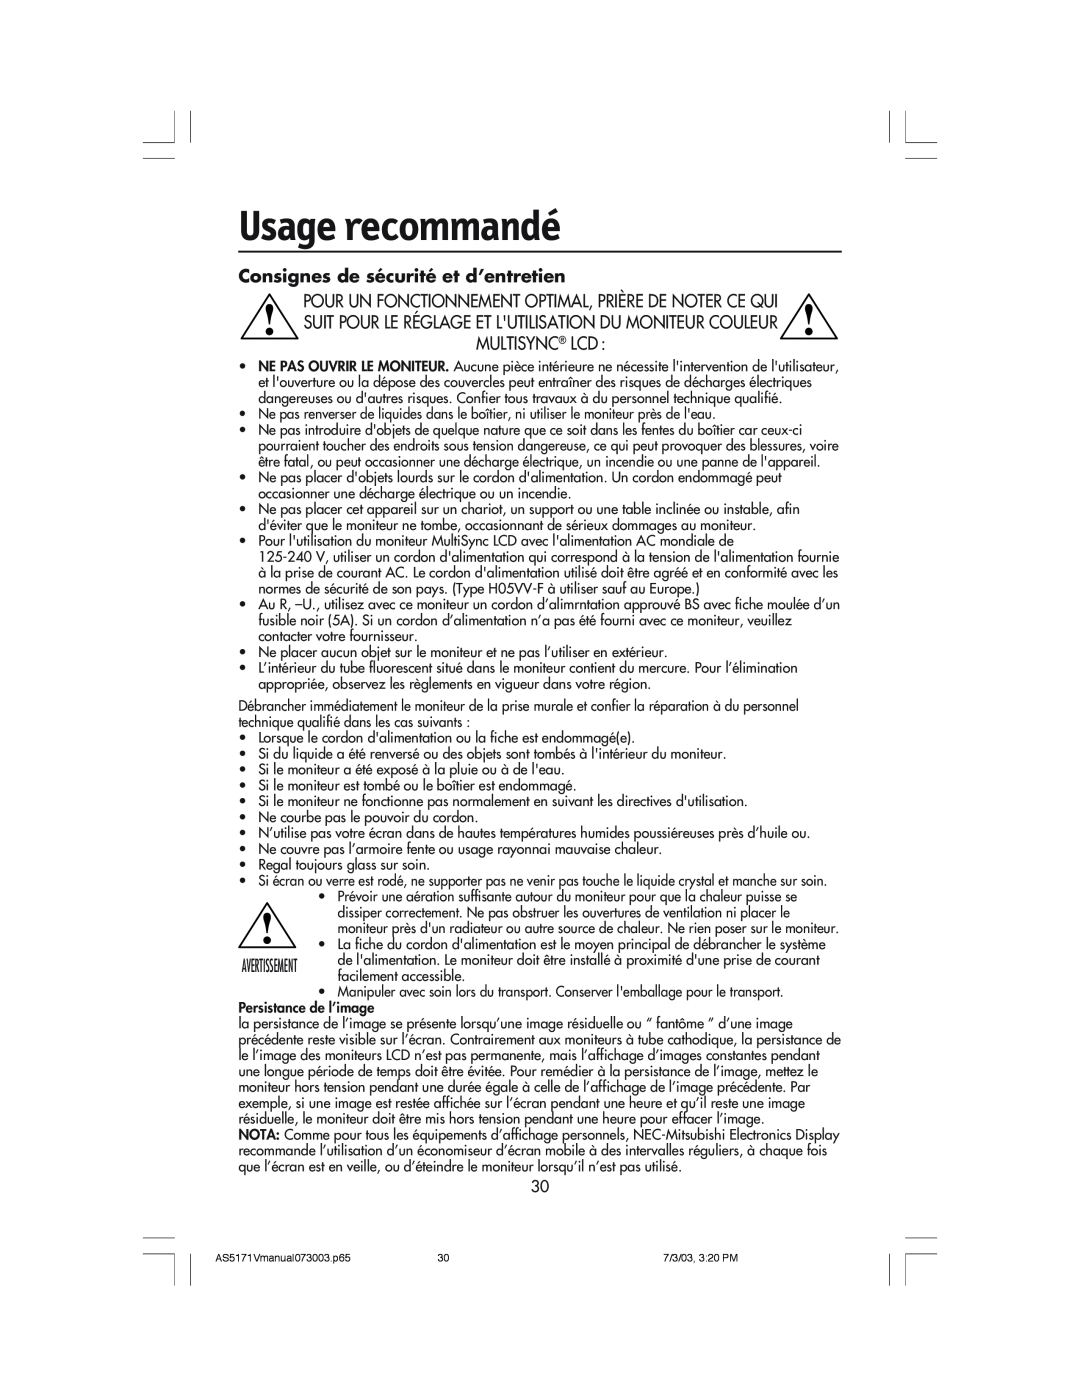 NEC LCD71V manual Usage recommandé, Consignes de sécurité et d’entretien 